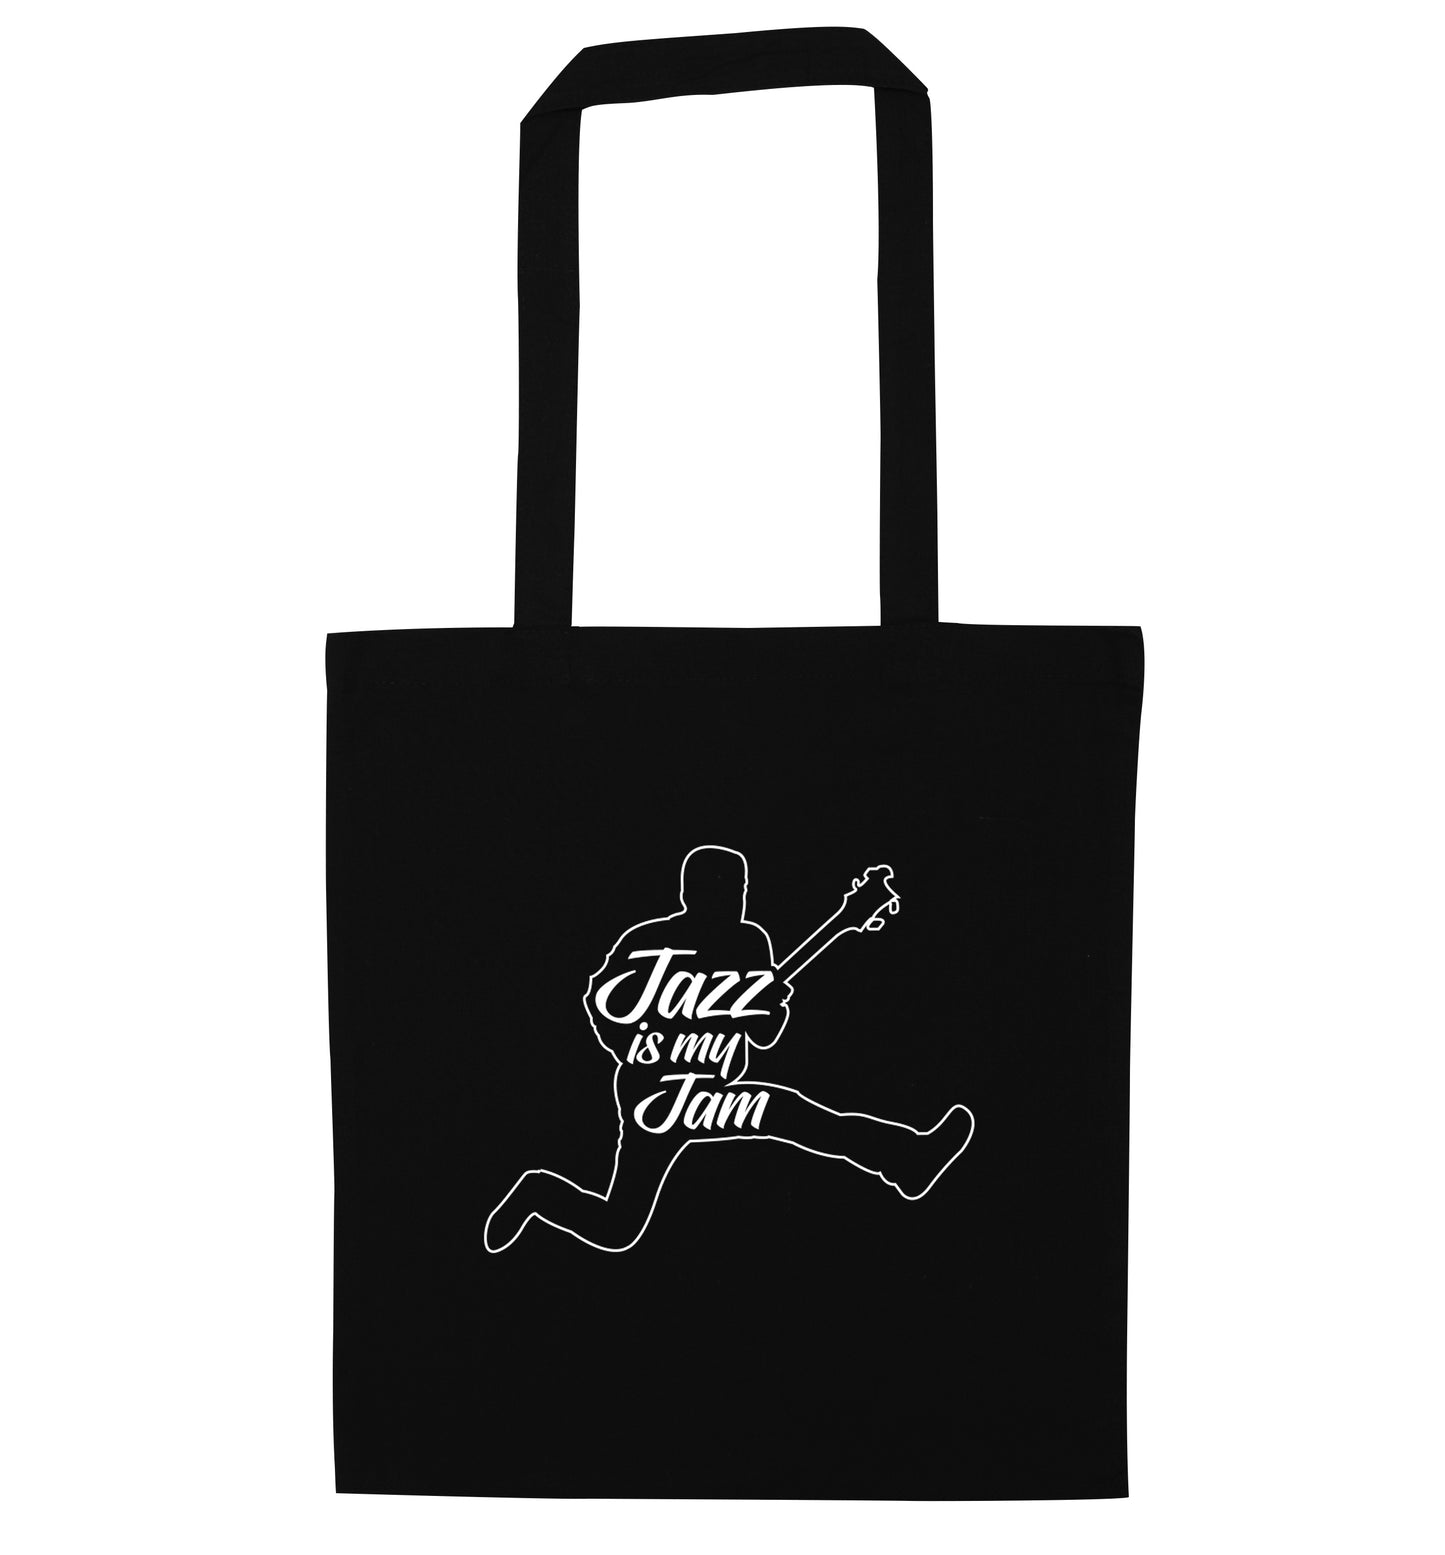 Jazz is my jam black tote bag